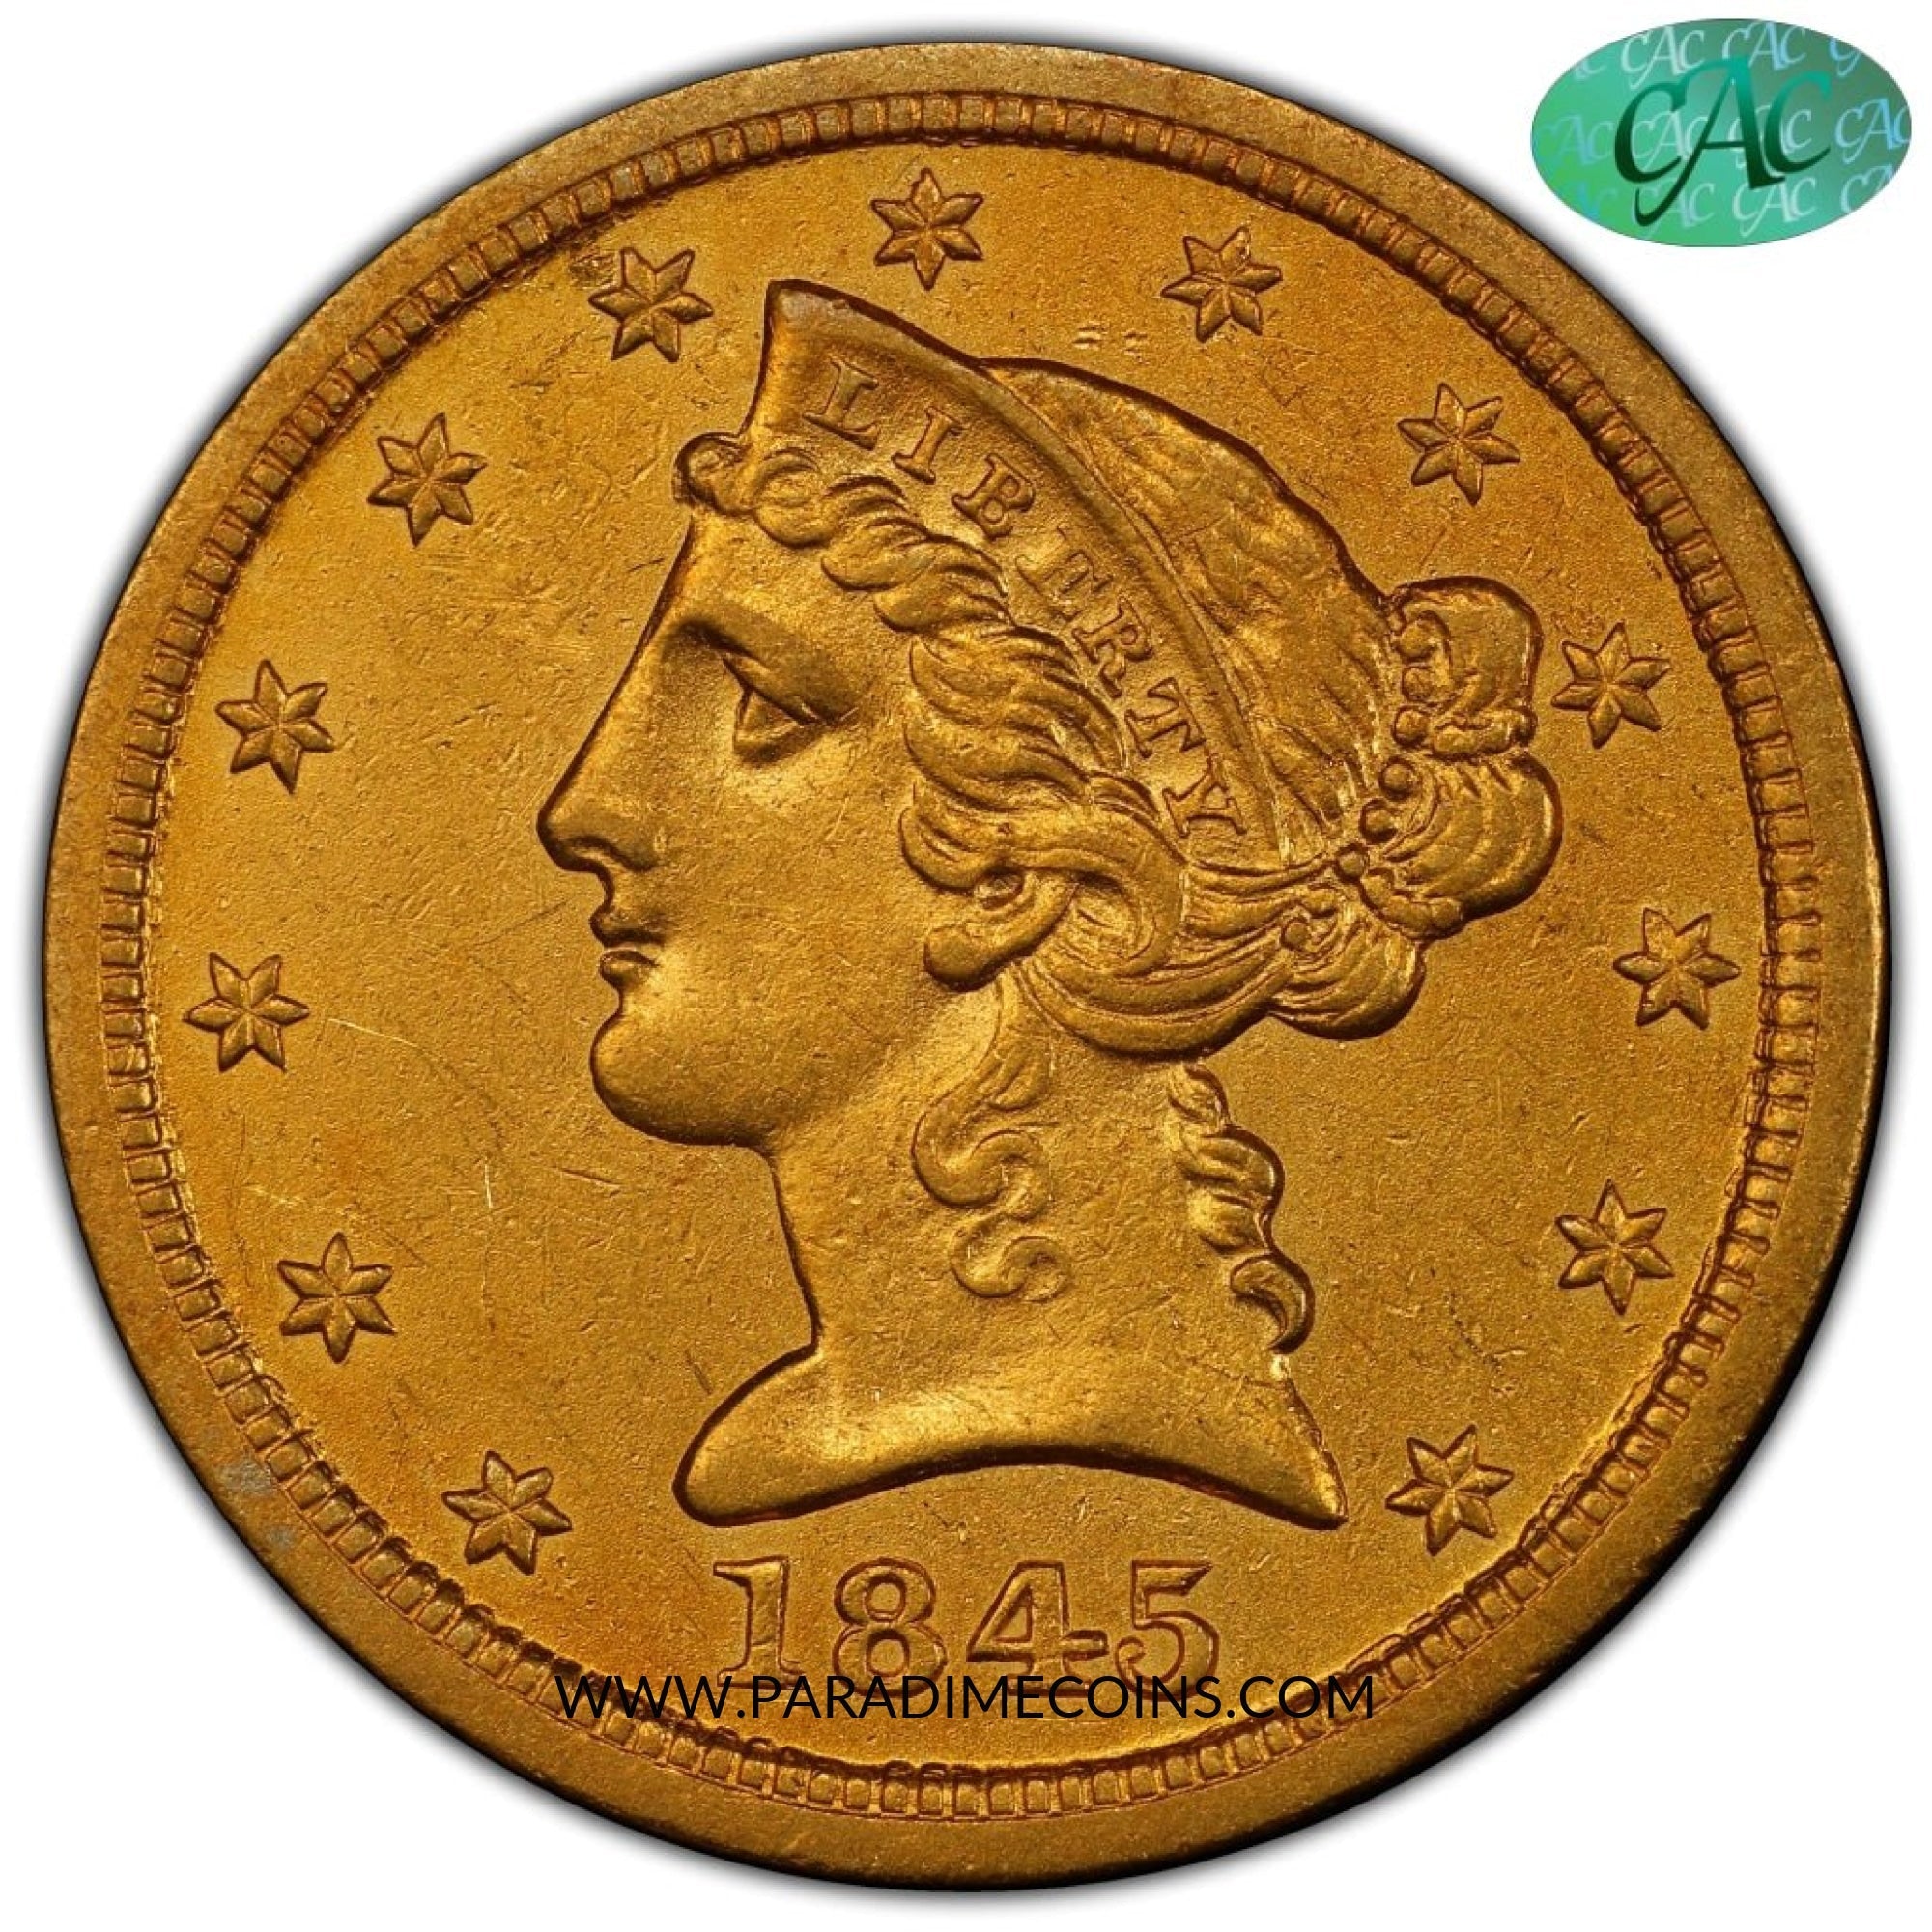 1845-O $5 AU53 PCGS EX ASHLAND CITY/ BLUE HILL - Paradime Coins | PCGS NGC CACG CAC Rare US Numismatic Coins For Sale